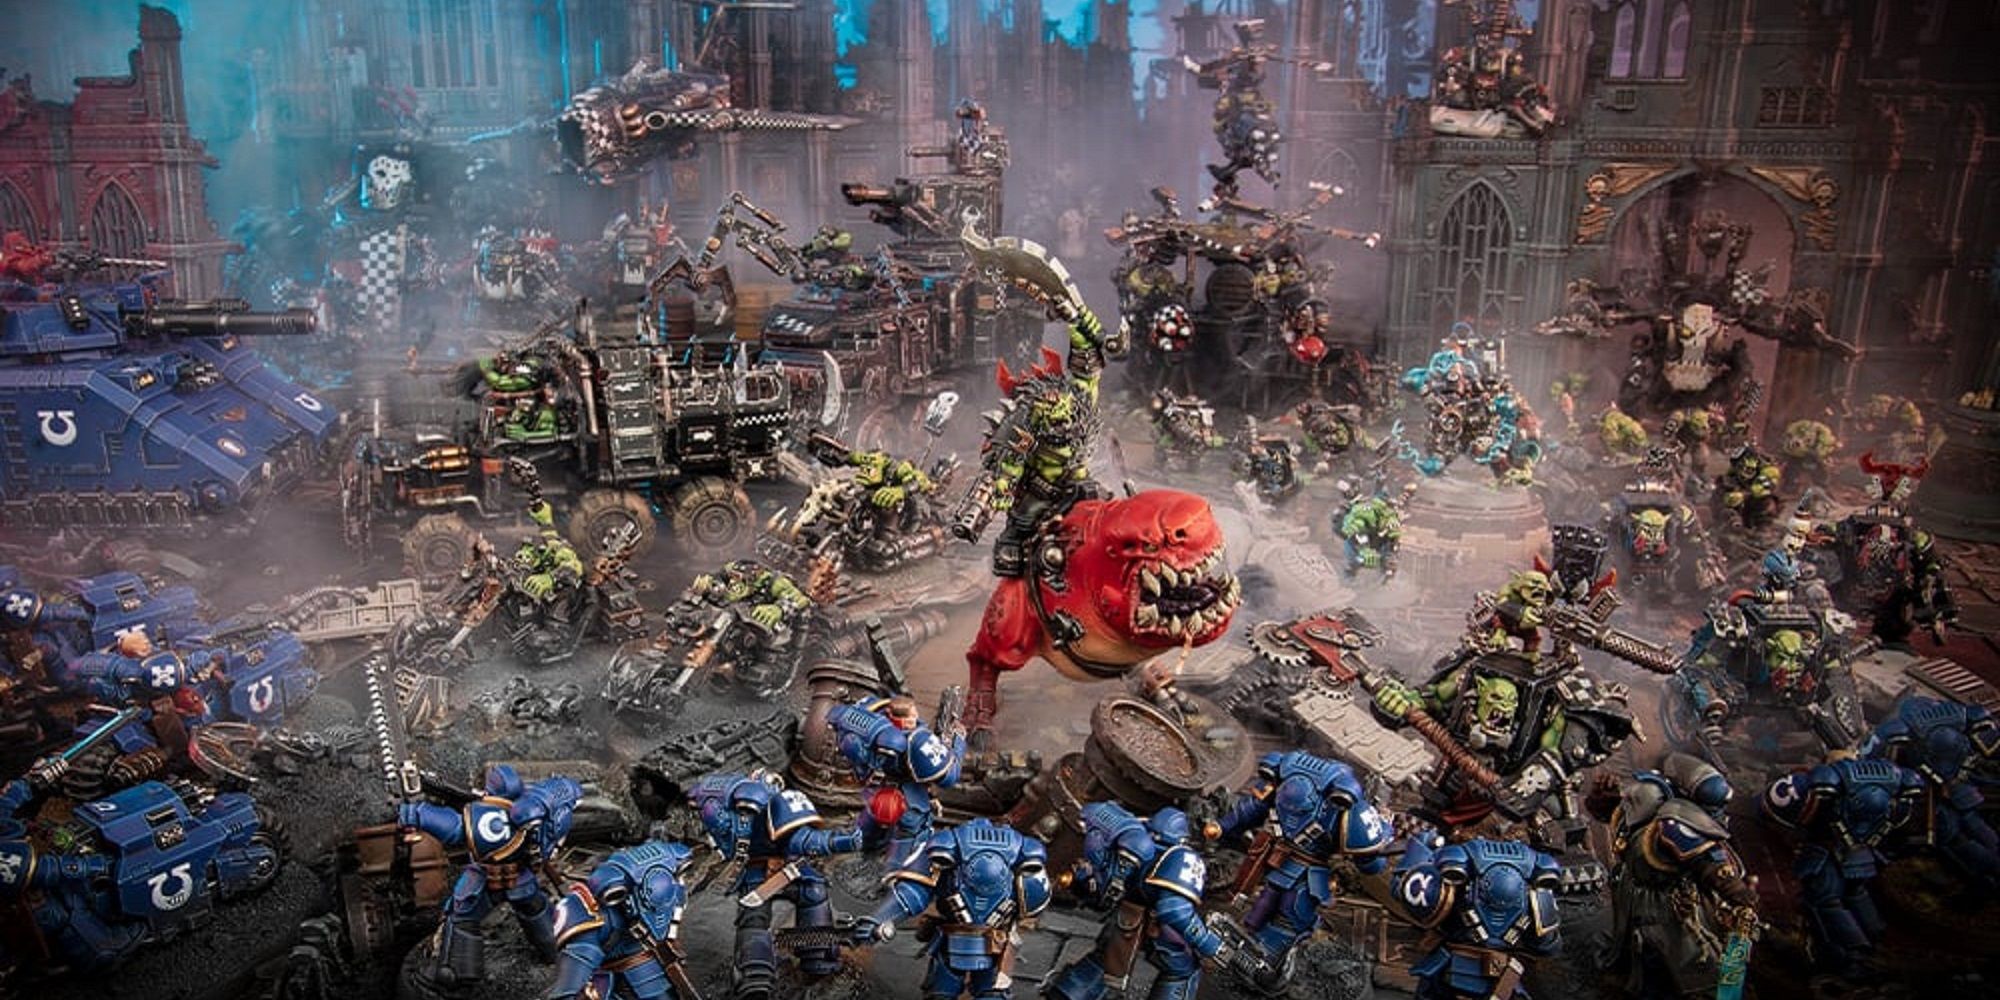 Кодекс орков Warhammer 40,000, 10-е издание: жизнеспособна ли ужасная толпа?